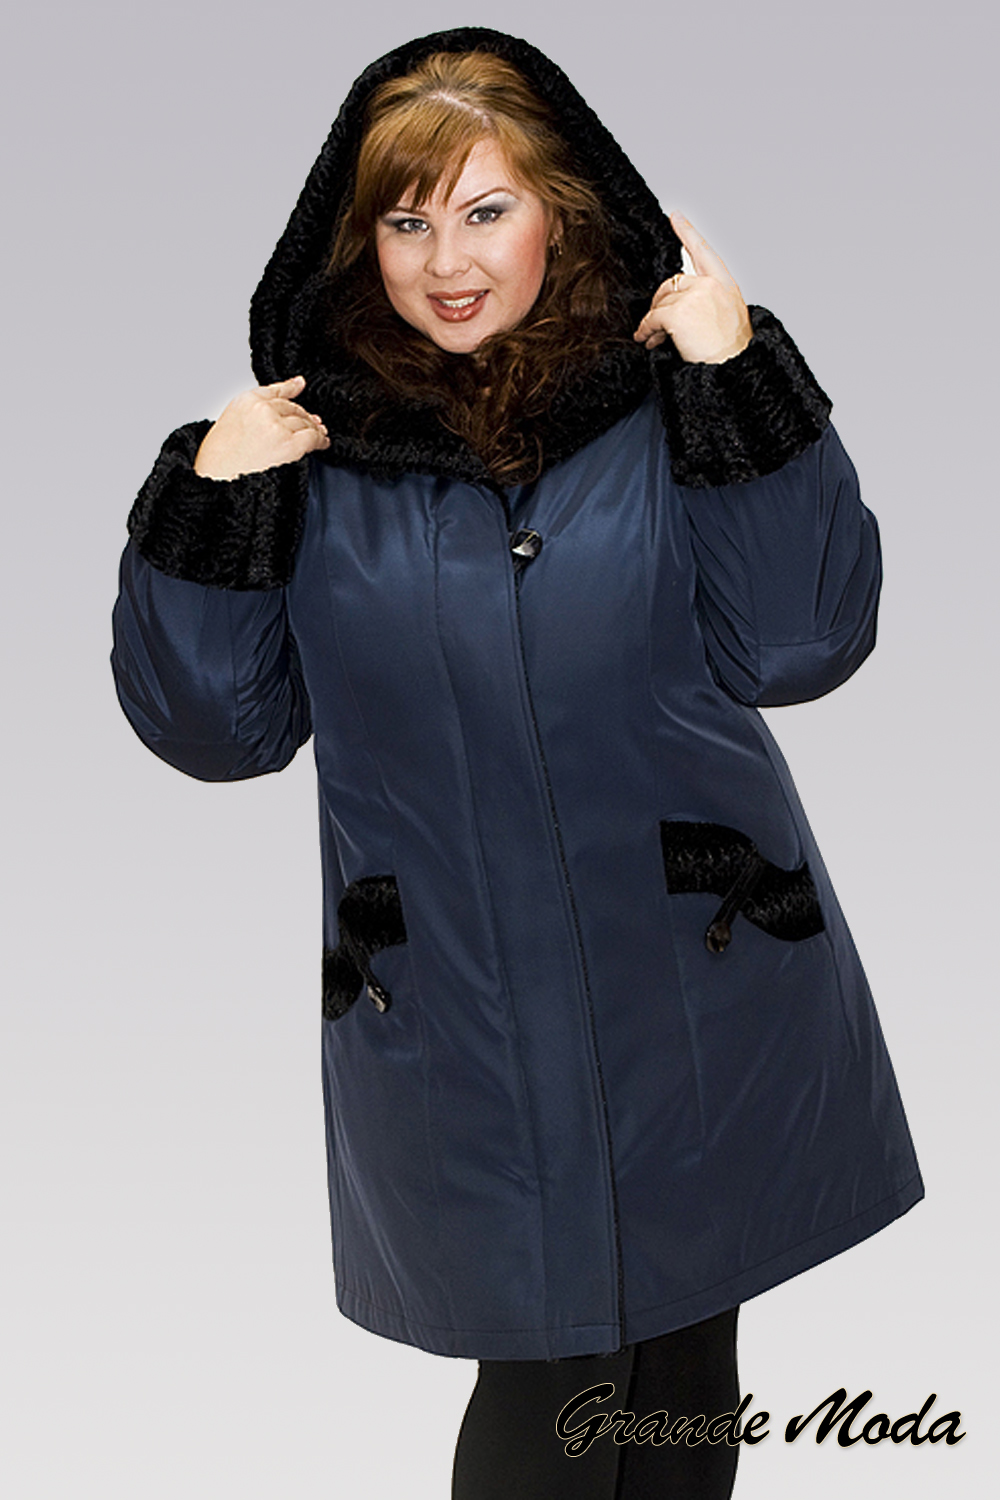 Пуховики 60 размера. Зимняя куртка женская валберис 60 размер. Куртки женские зимние 64 размер на валберис. Зимняя куртка женская валберис 62 размер. Куртки для полных женщин.